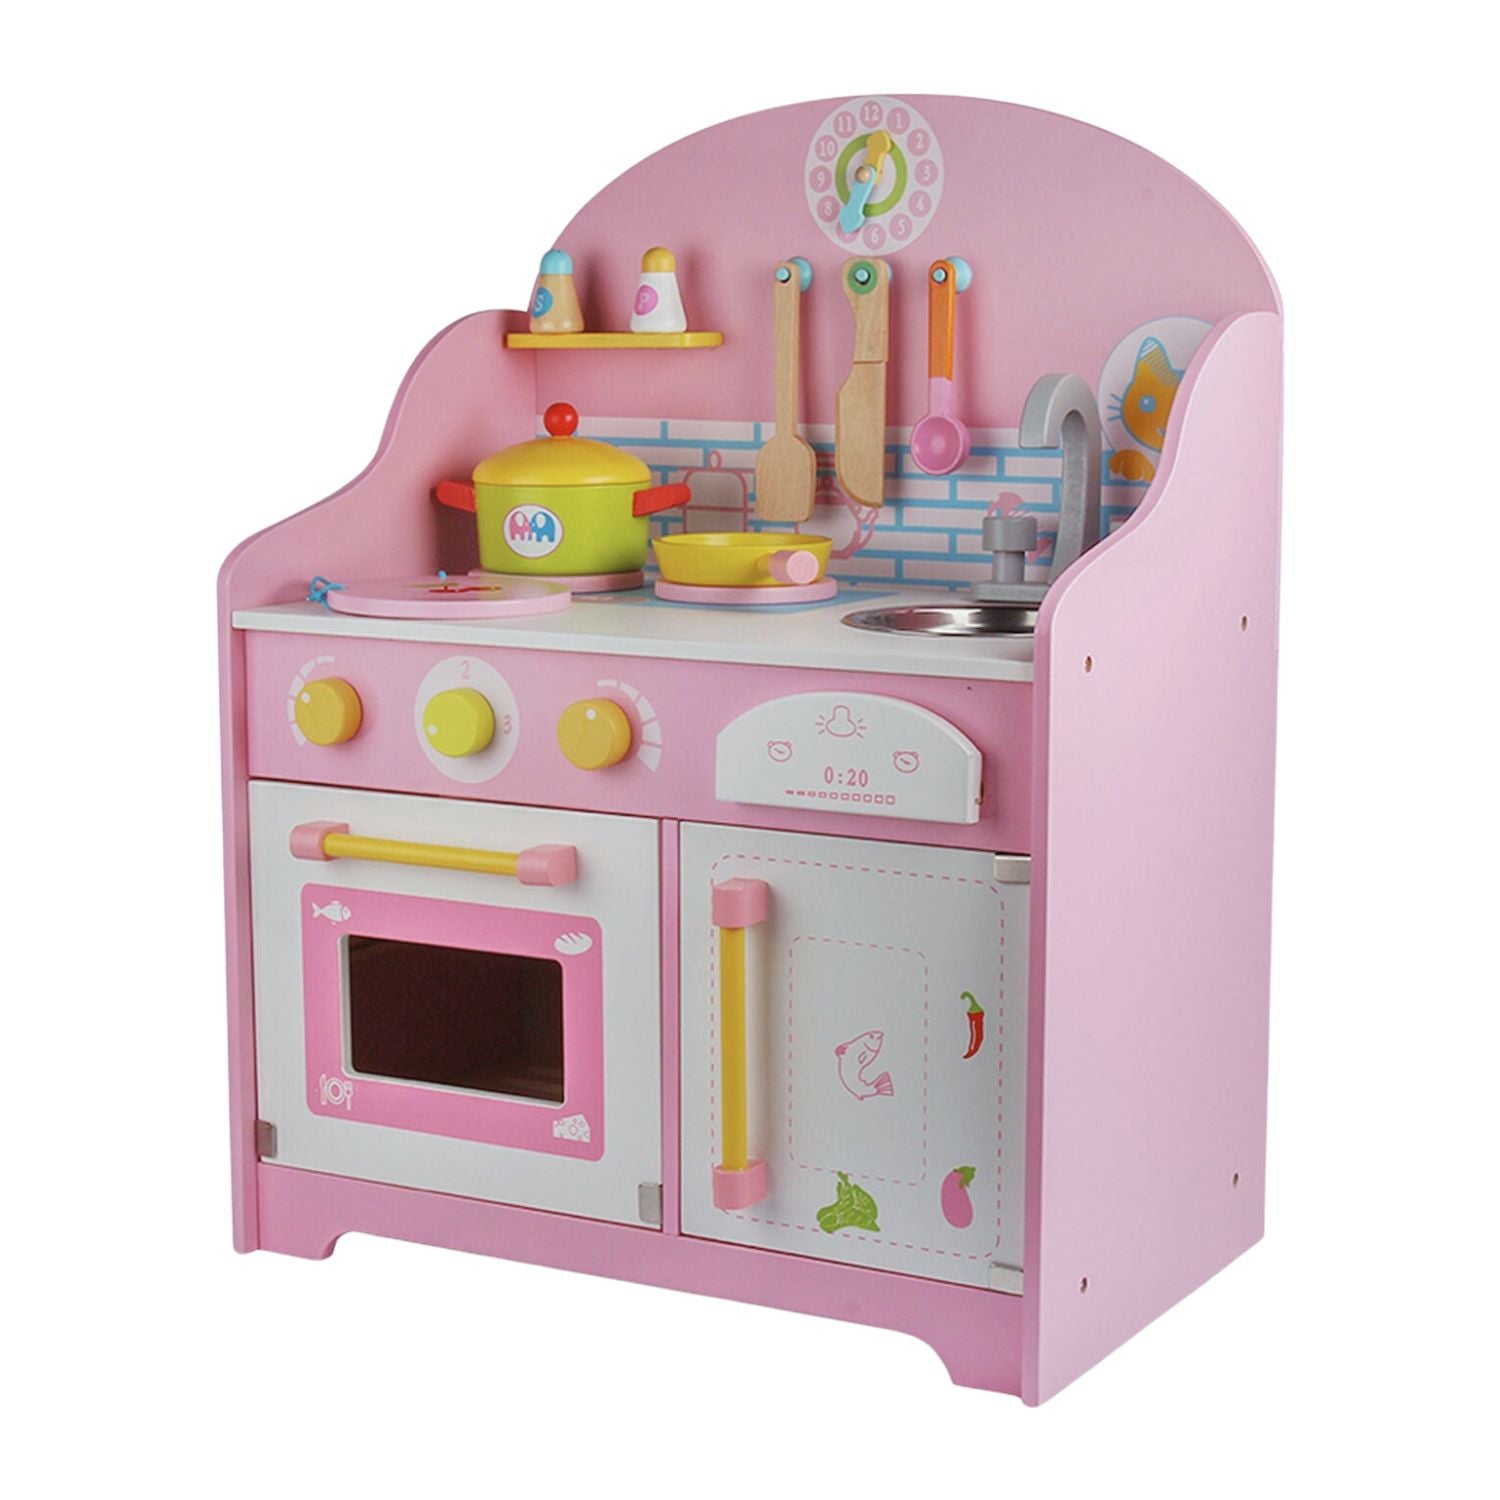 EKKIO Wooden Kitchen Playset for Kids with Clock (Japanese Style Kitchen Set, Pink)